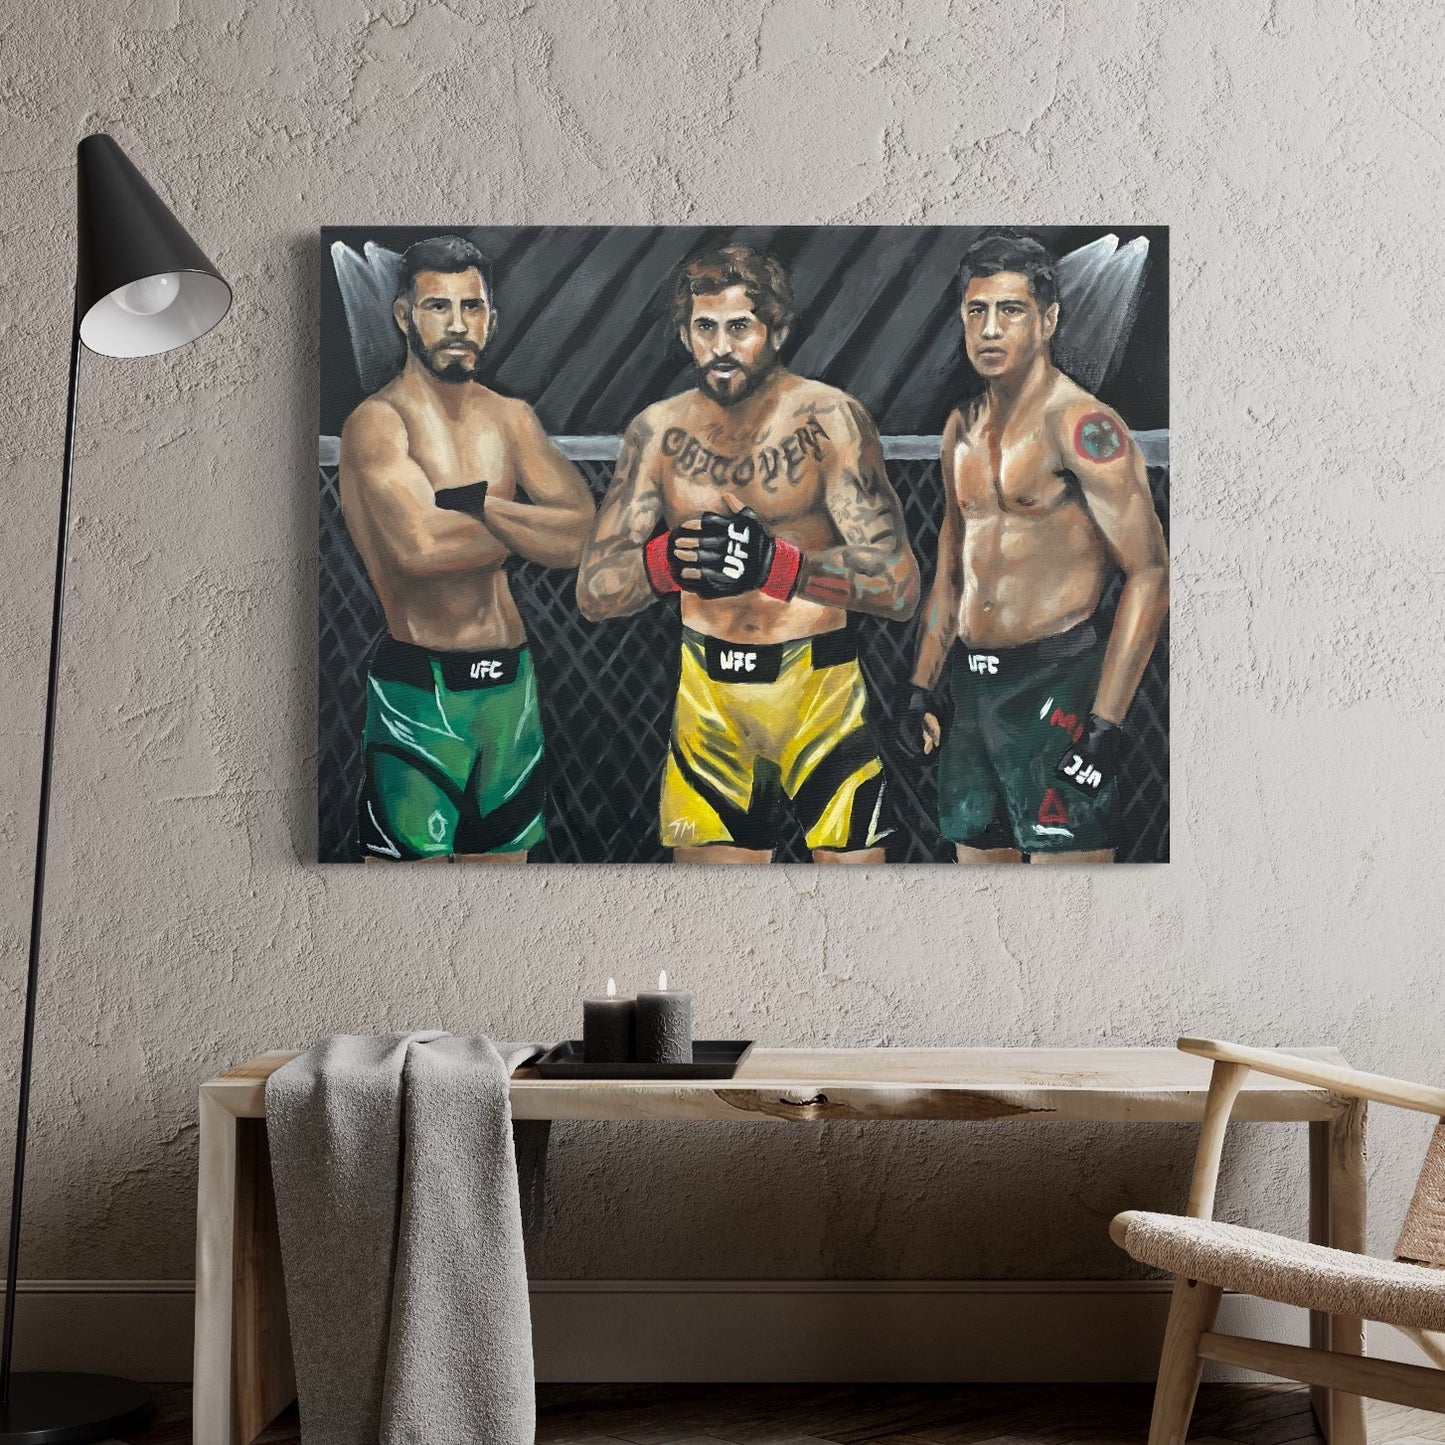 UFC Legends - Poster Print